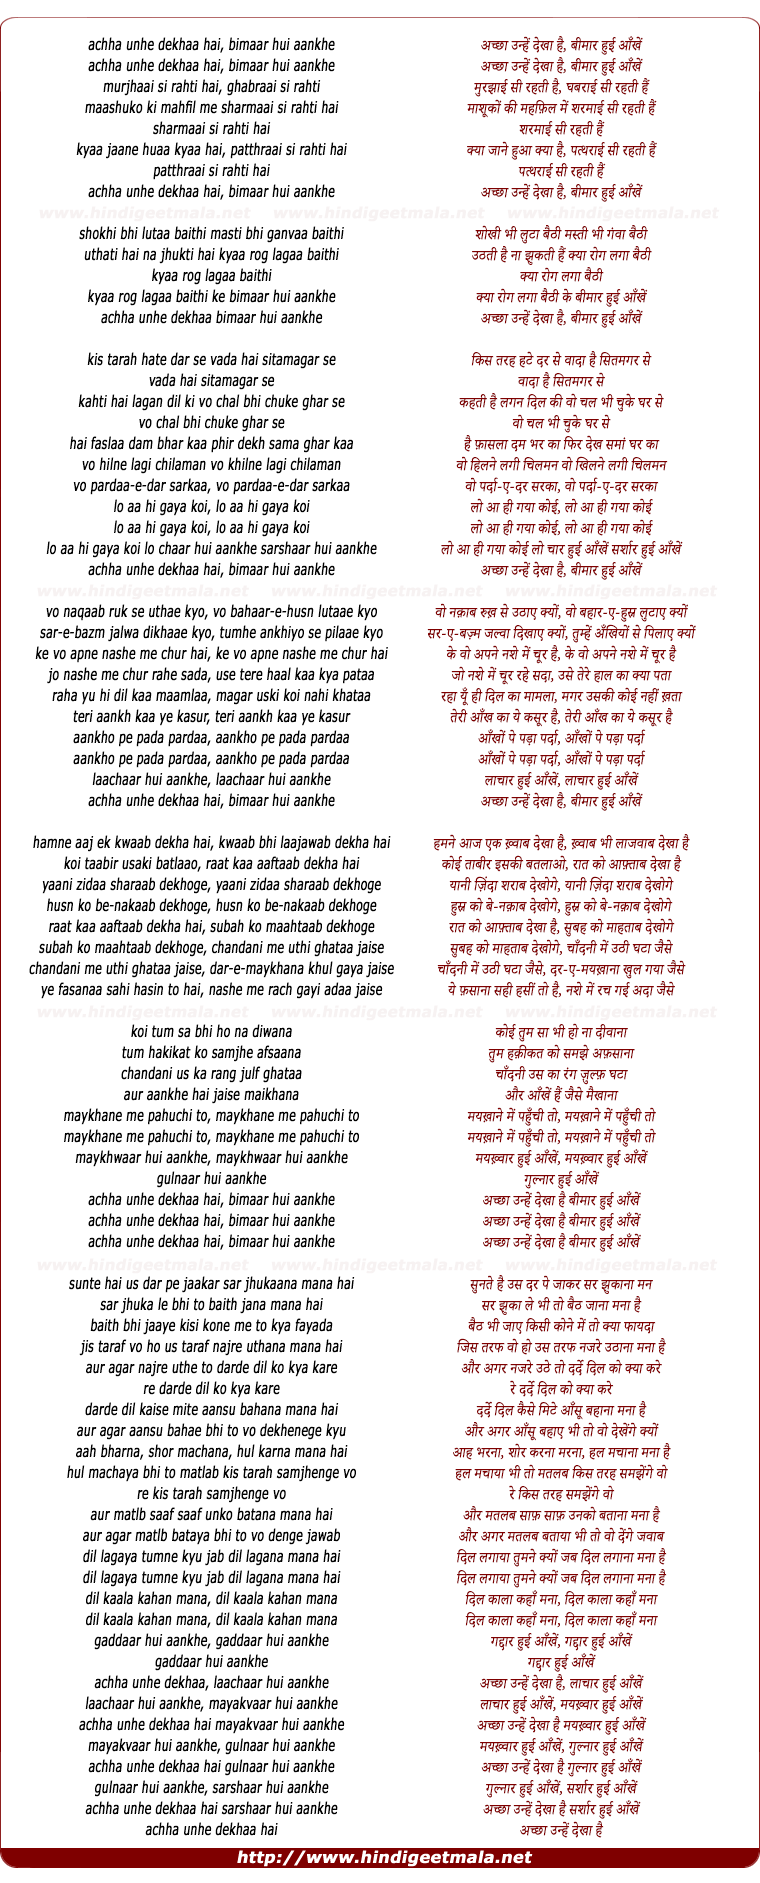 lyrics of song Achchhaa Unhen Dekhaa Hai Bimaar Hui Aankhen